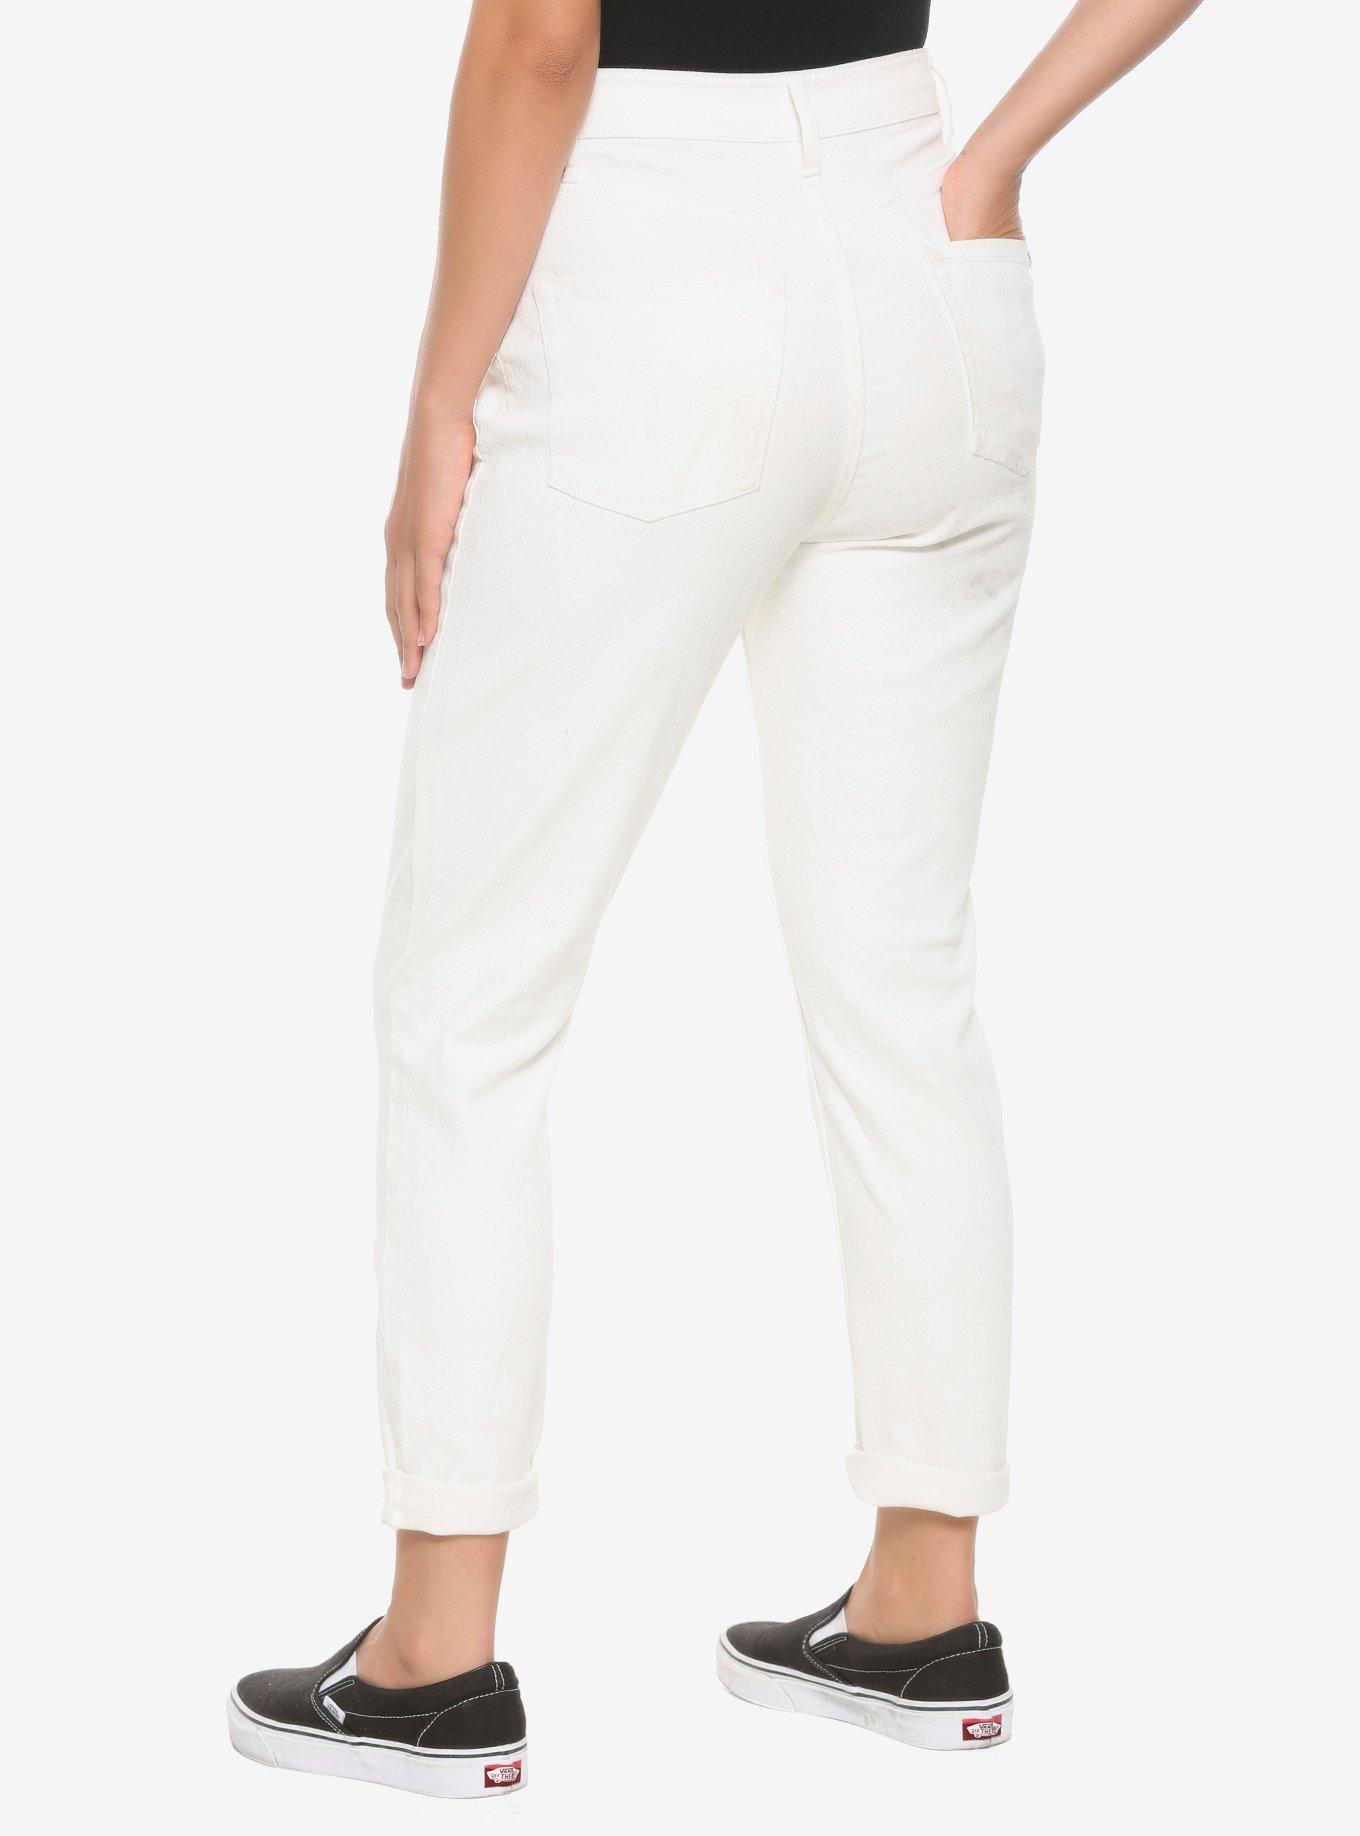 HT Denim Off-White Destructed Mom Jeans, OFF WHITE, alternate